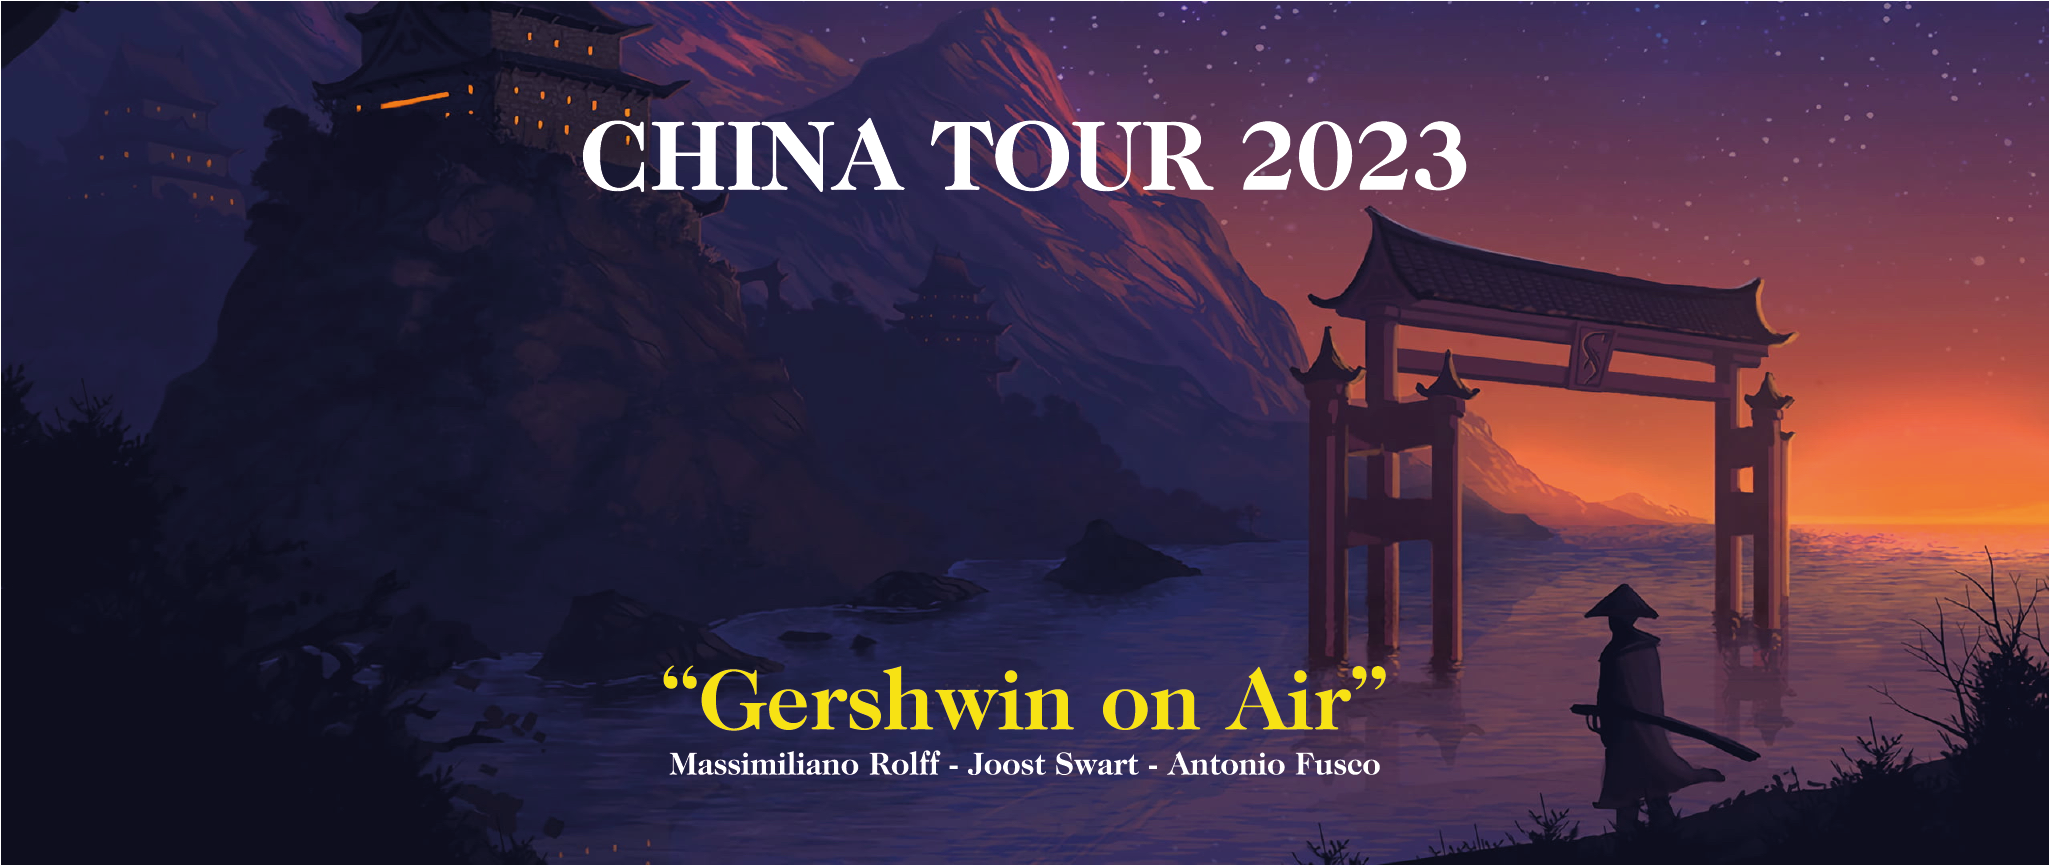 tour china 2023 ats